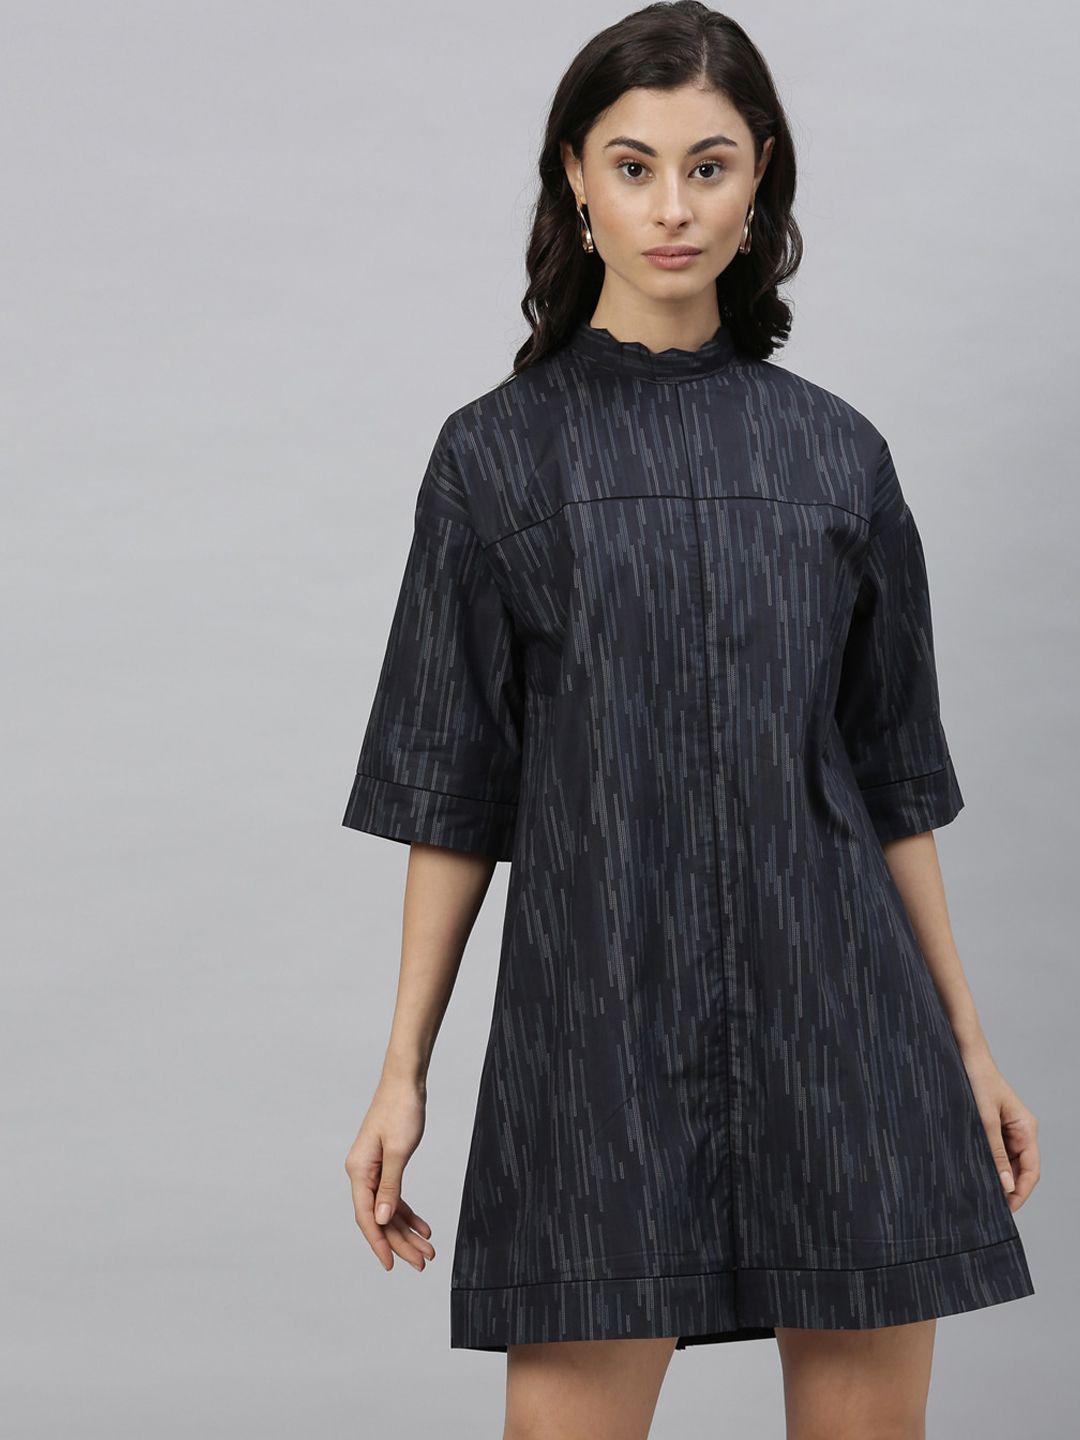 rareism-women-grey-self-design-a-line-dress